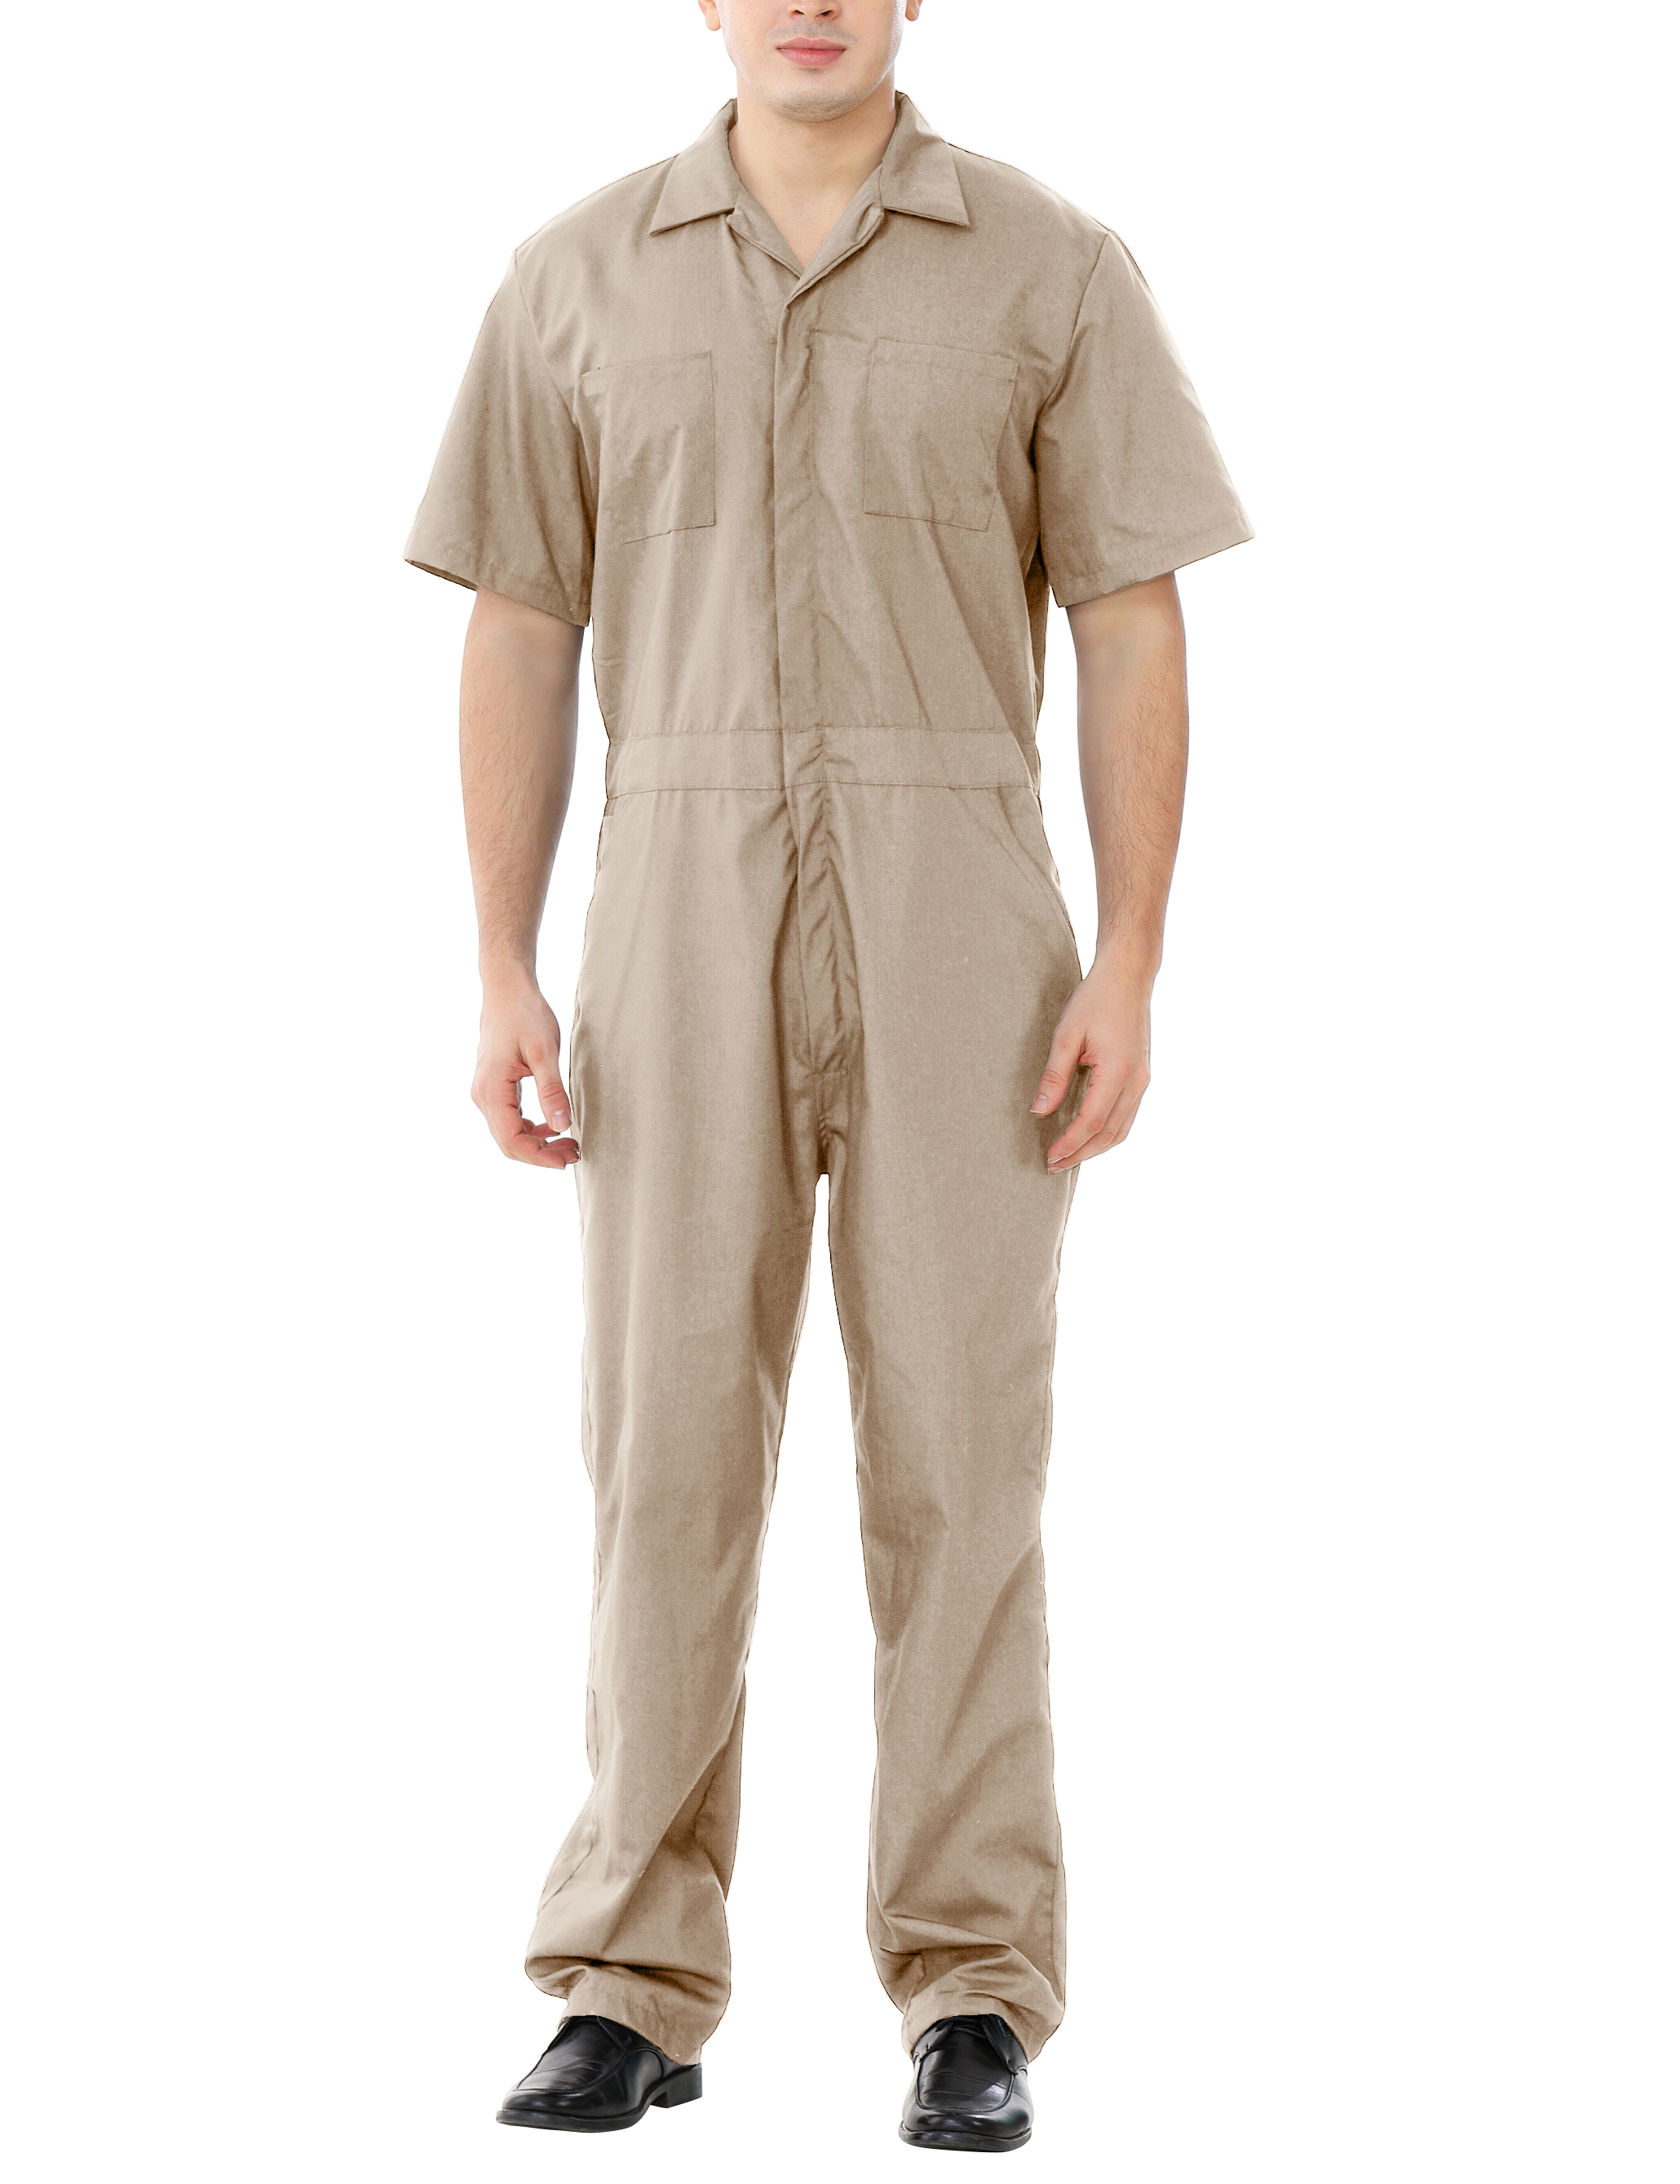 TOPTIE Men's Short Sleeve Coverall, Regular Size